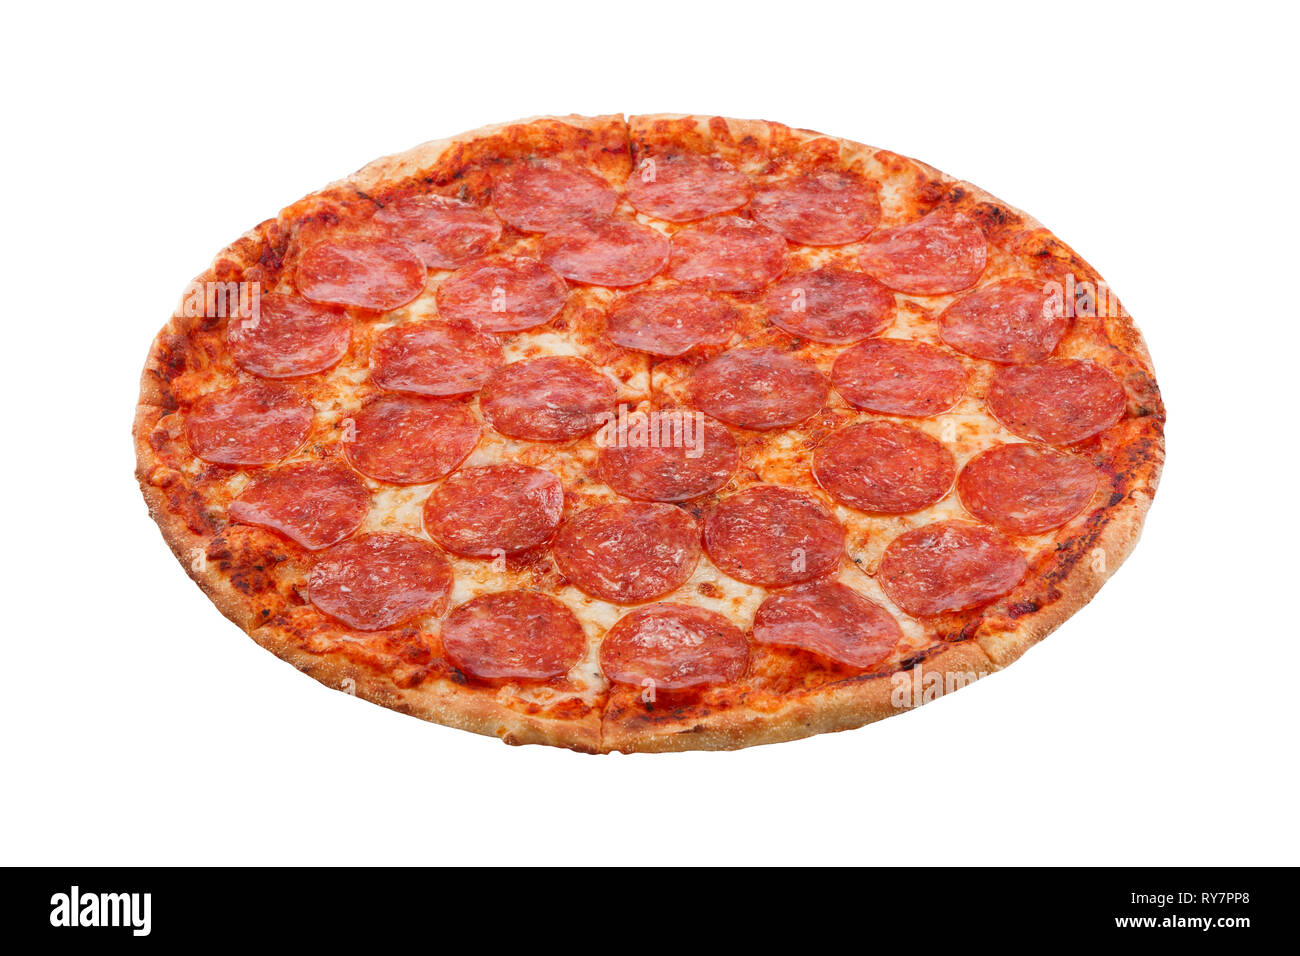 что добавляется в пиццу пепперони фото 69